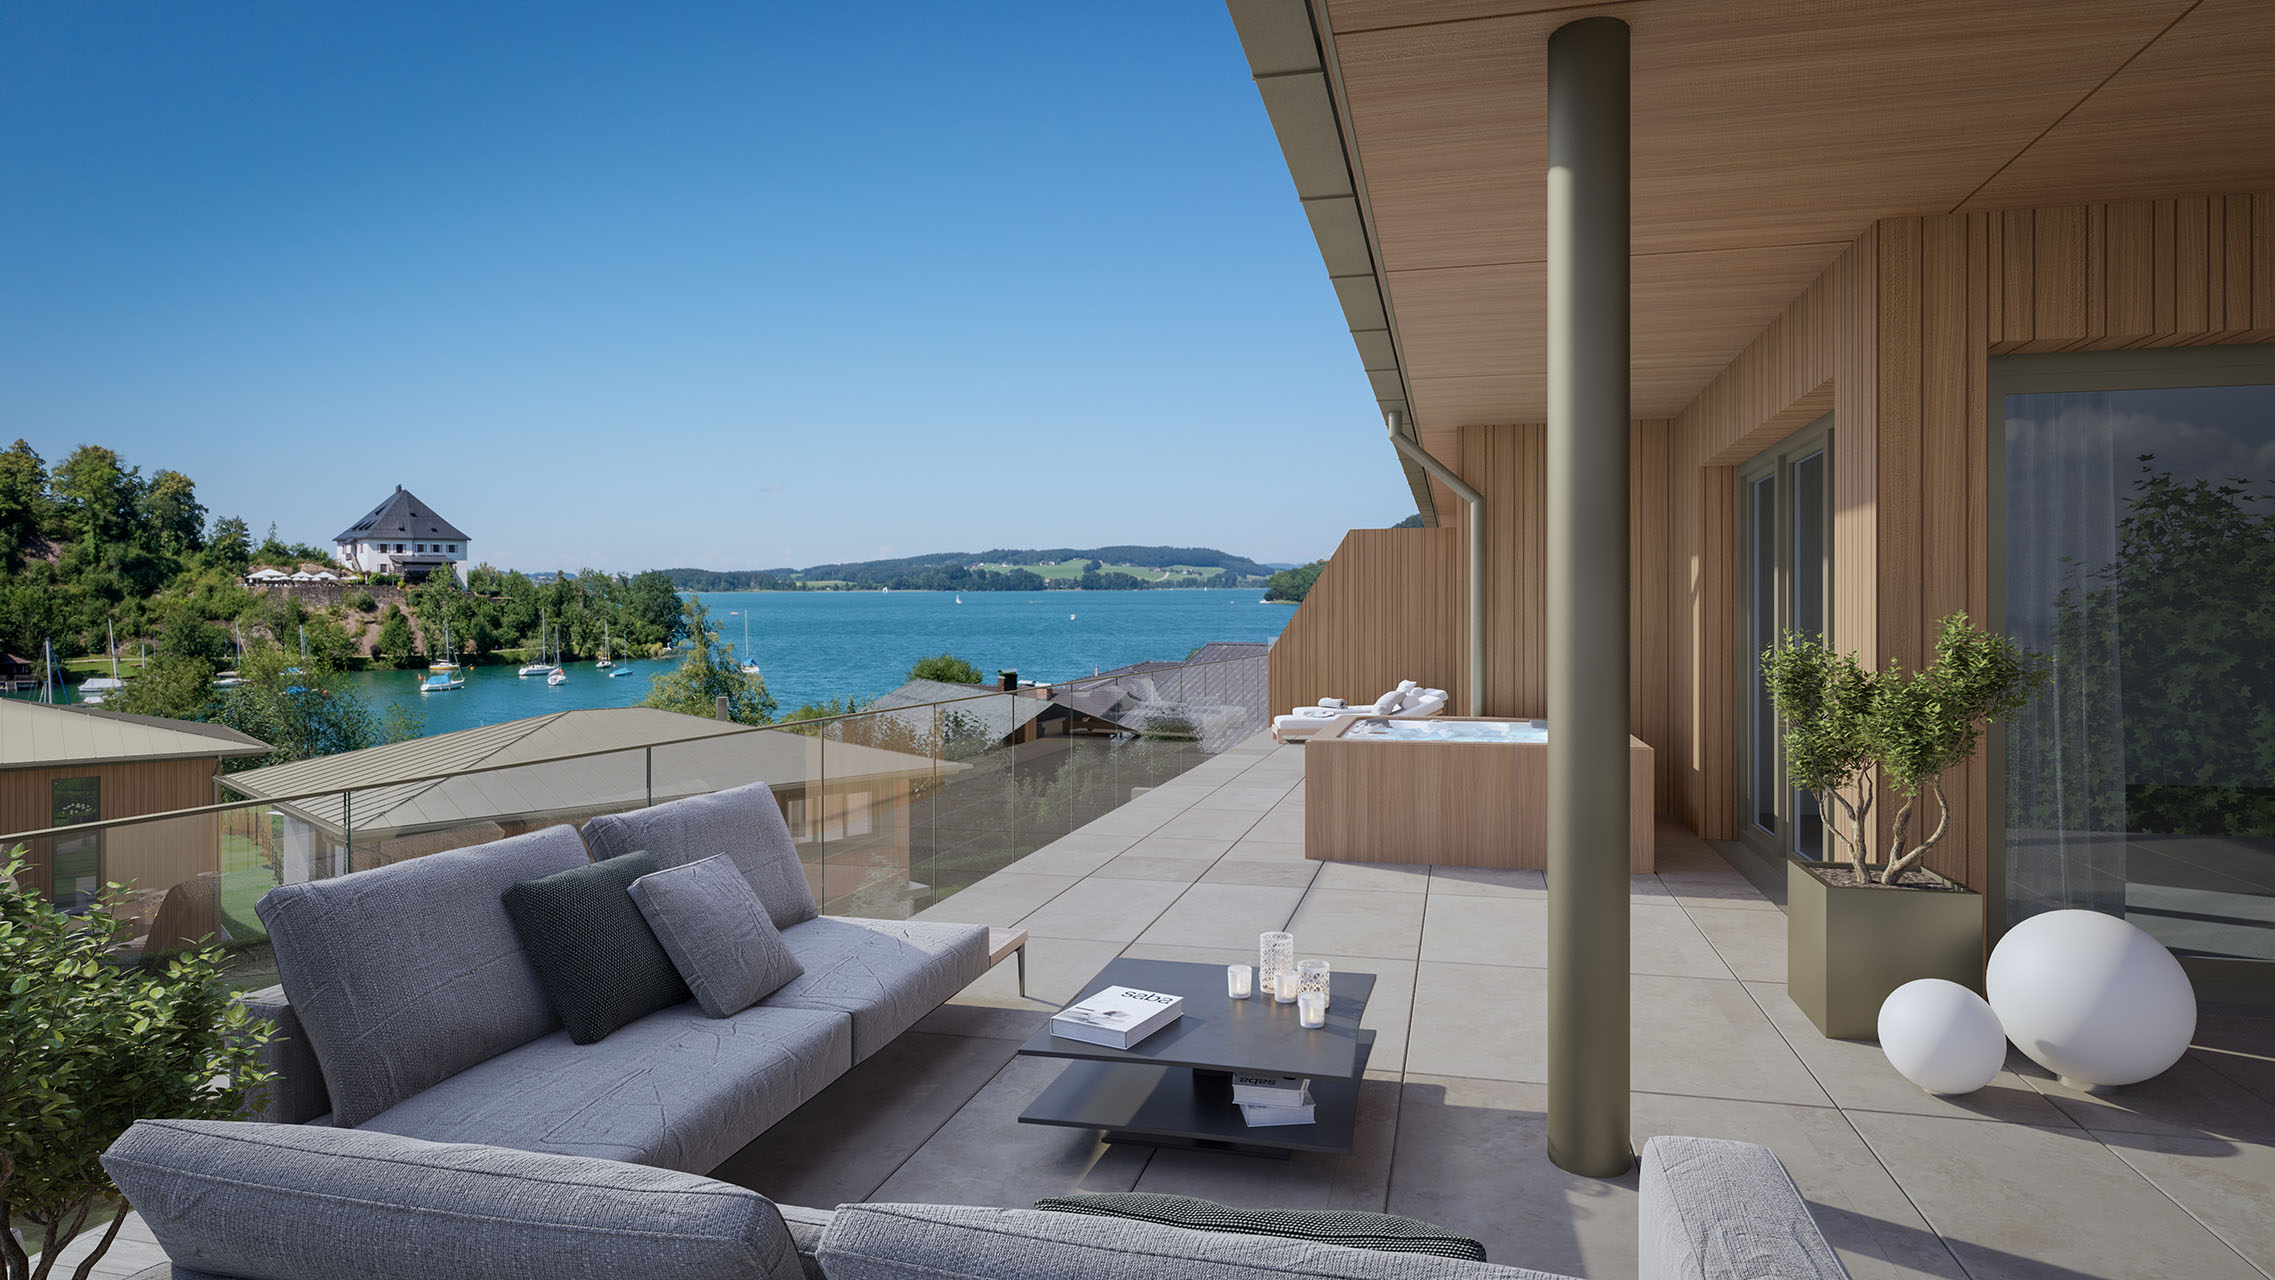 Außenvisualisierung einer Terrasse mit Blick auf den See, hochwertige Terrassenmöbel